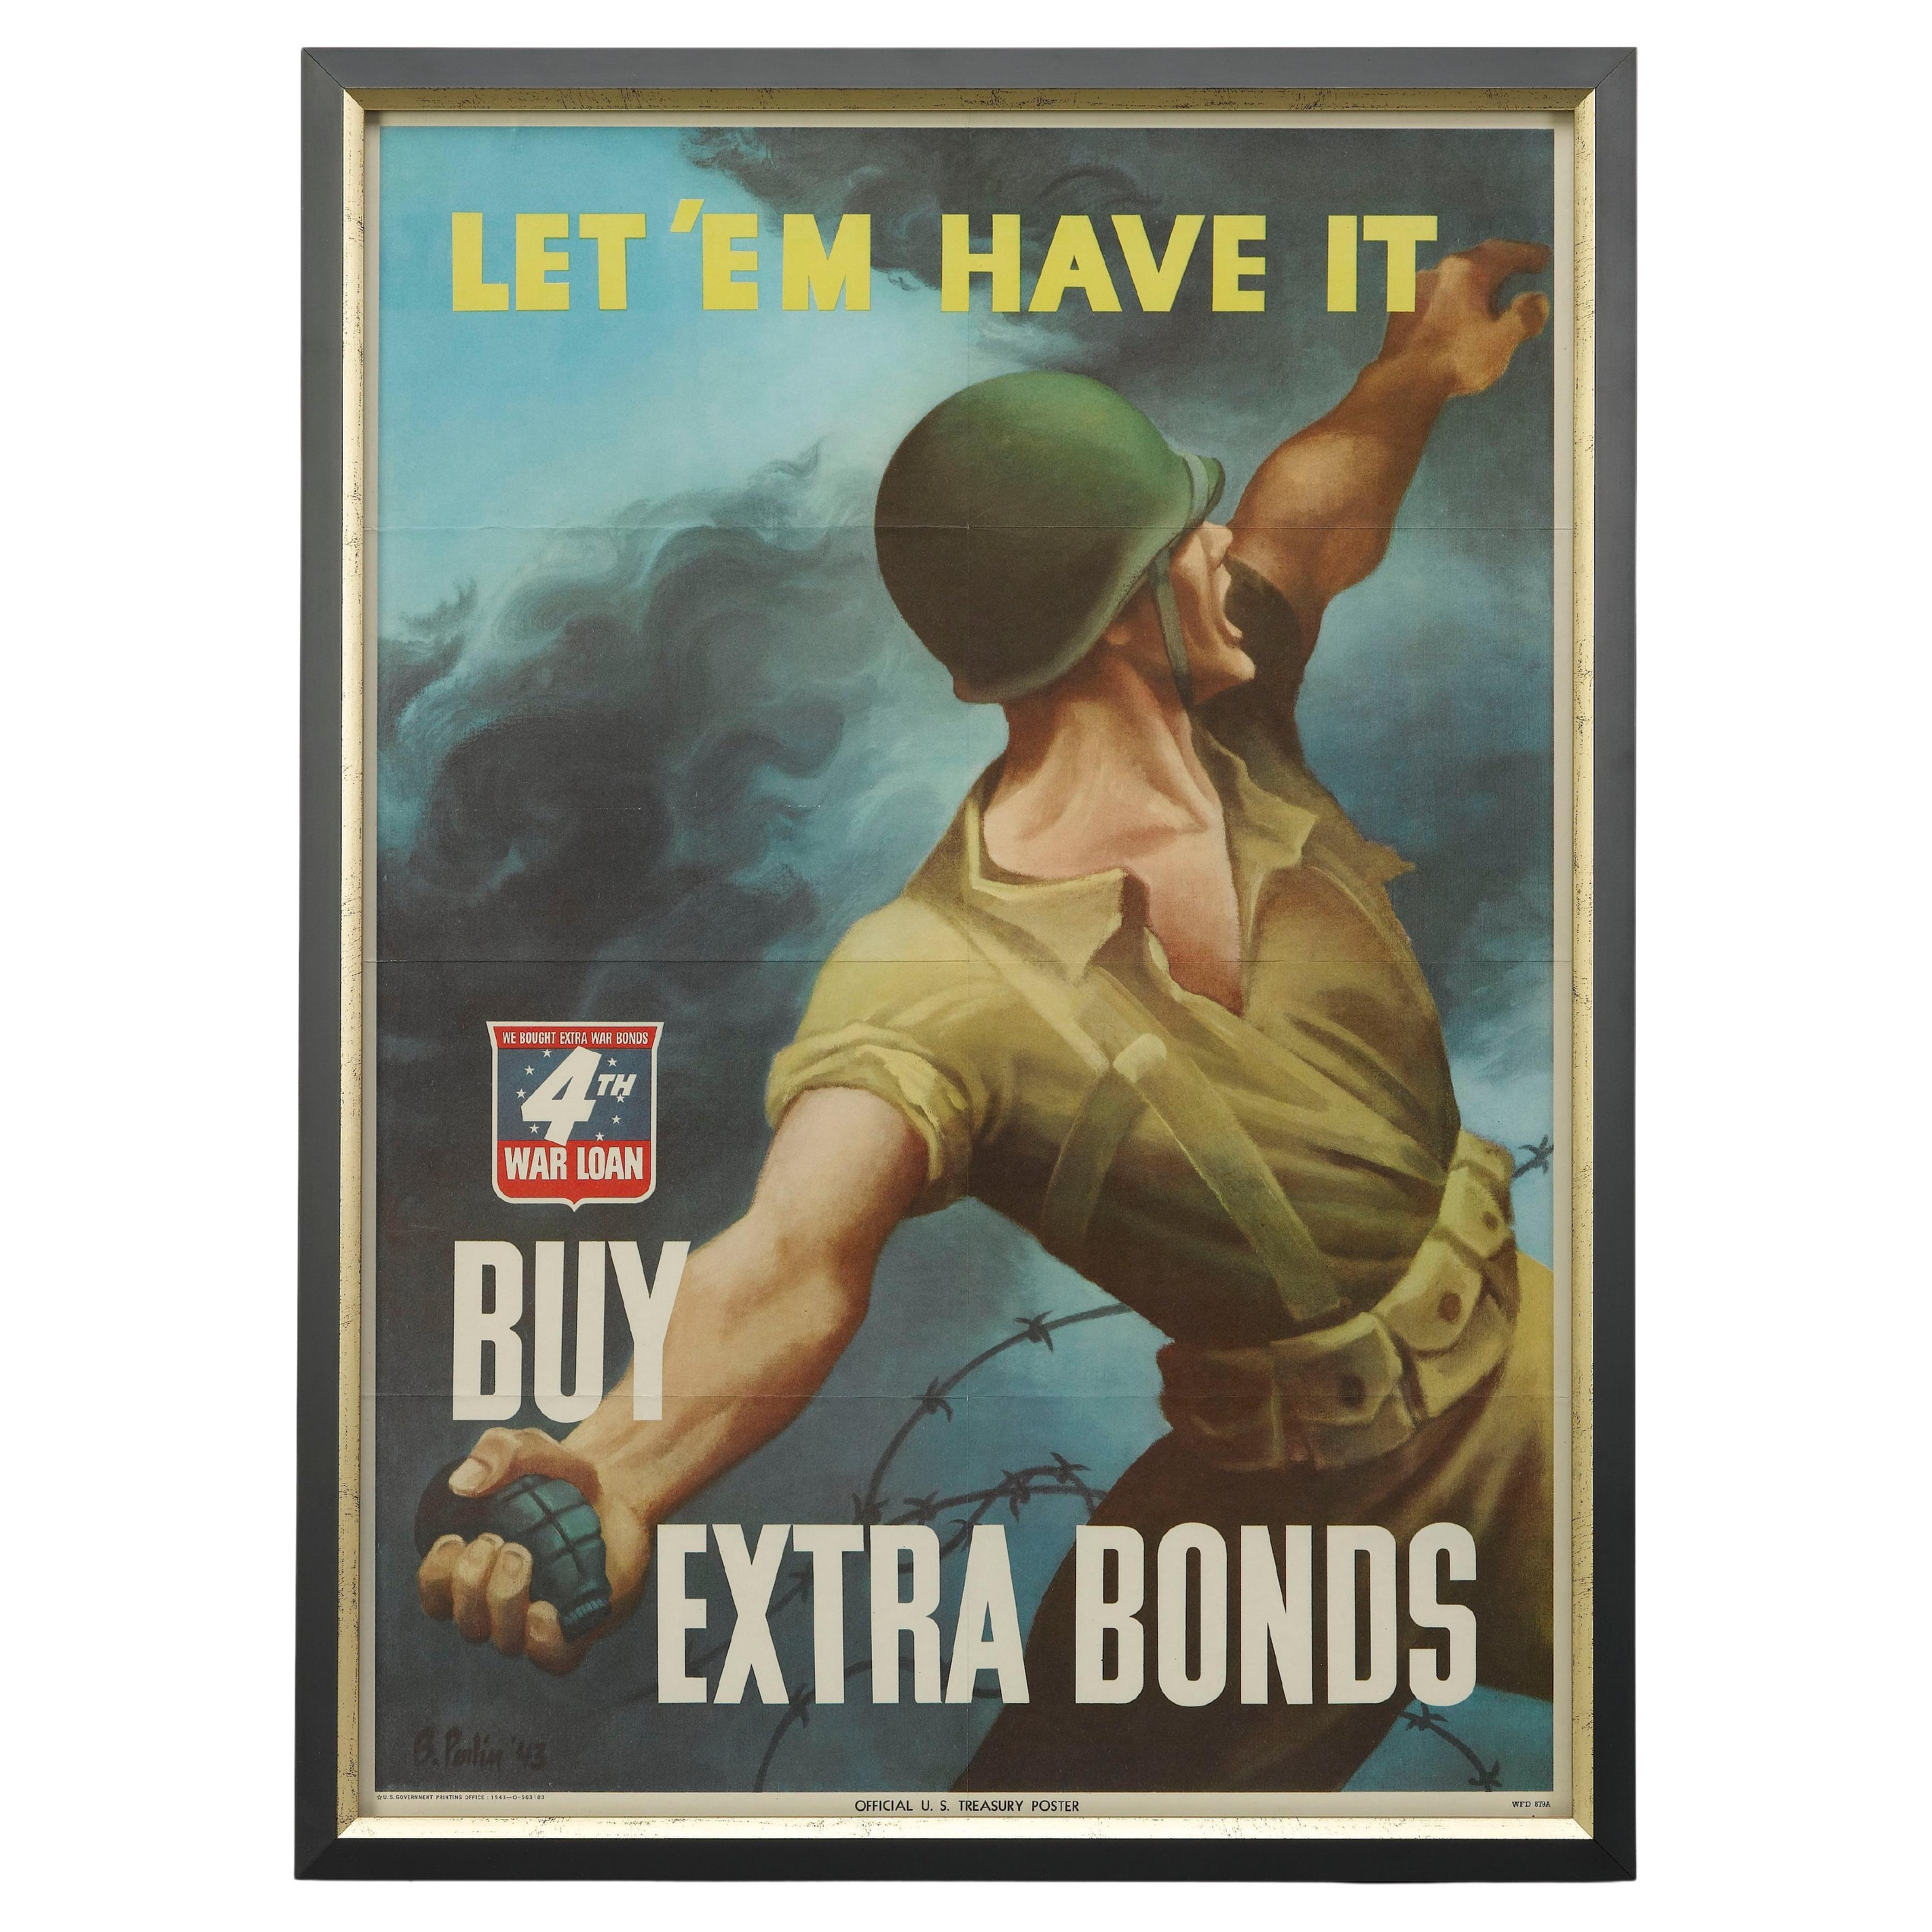 ""Laissez-le m'avoir. Affiche vintage d'un prêt à l'achat de guerre de la 4e guerre mondiale « Achetez des Bonds supplémentaires », 1943